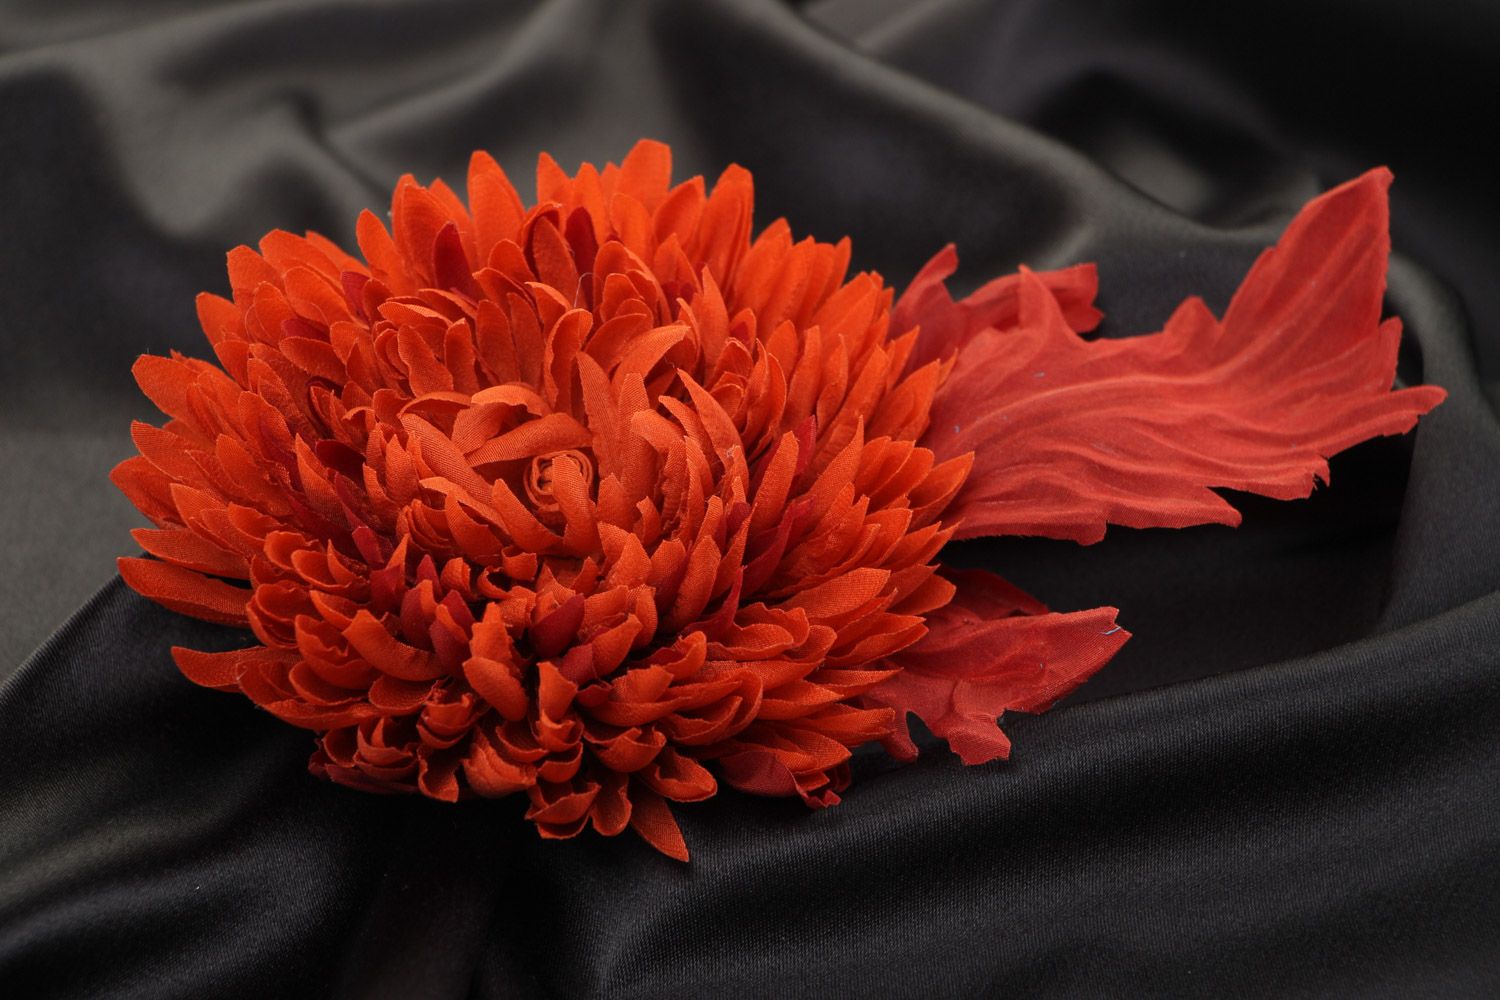 Брошь цветок из ткани красная яркая большая красивая оригинальная ручной работы фото 1